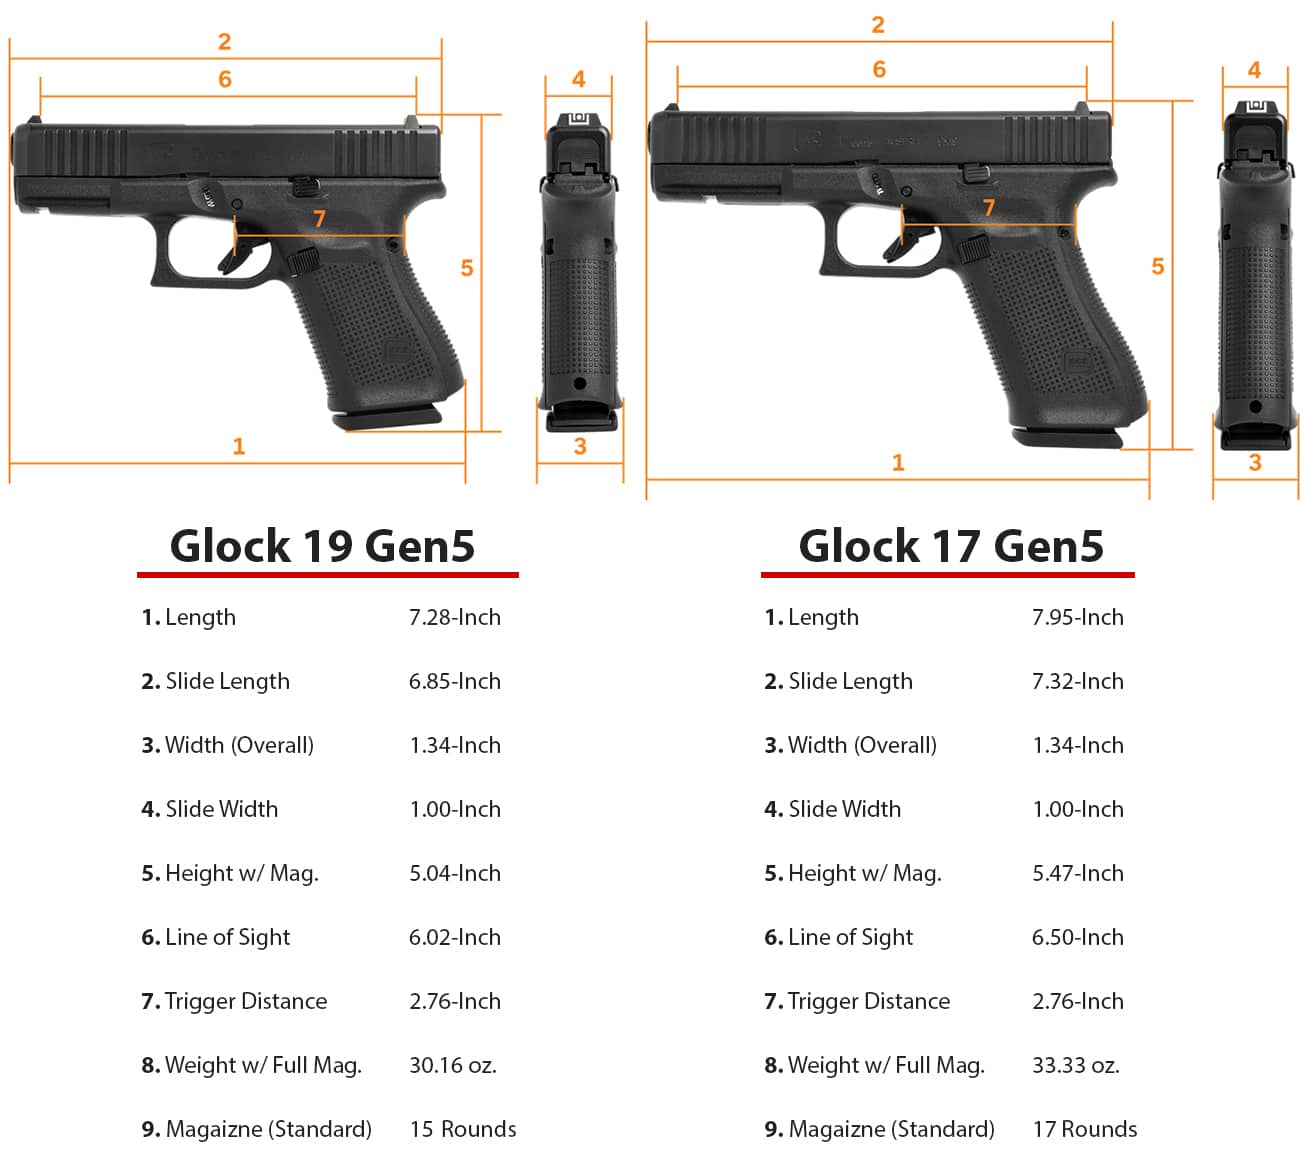 Gen5 Glock G17 vs Gen5 Glock G22